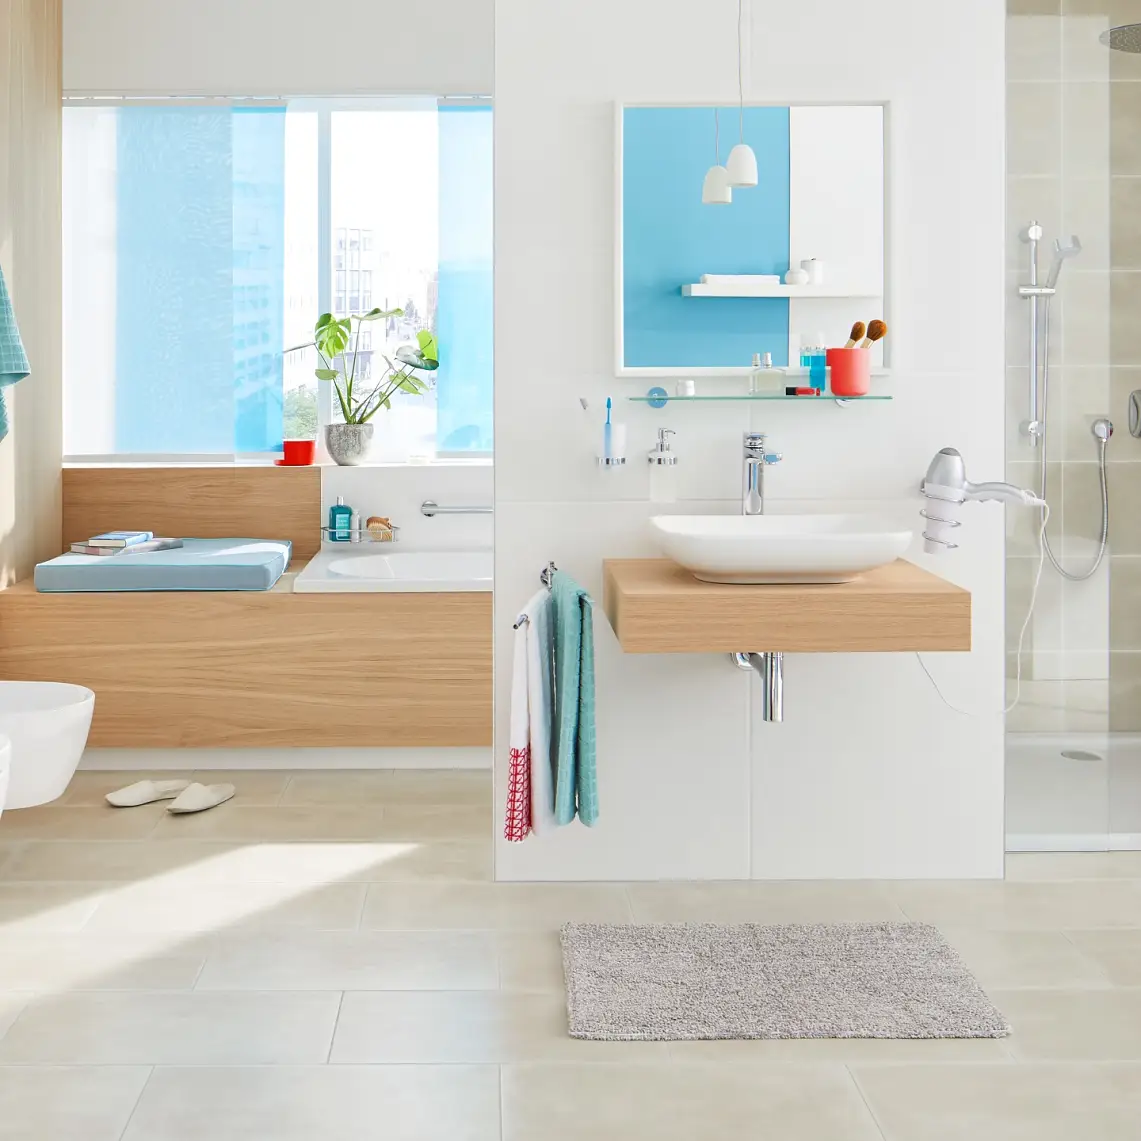 Entdecken Sie unsere große Auswahl an Badezimmer-Accessoires im modernen, hochklassigen und eleganten Design entsprechend Ihrem Stil.